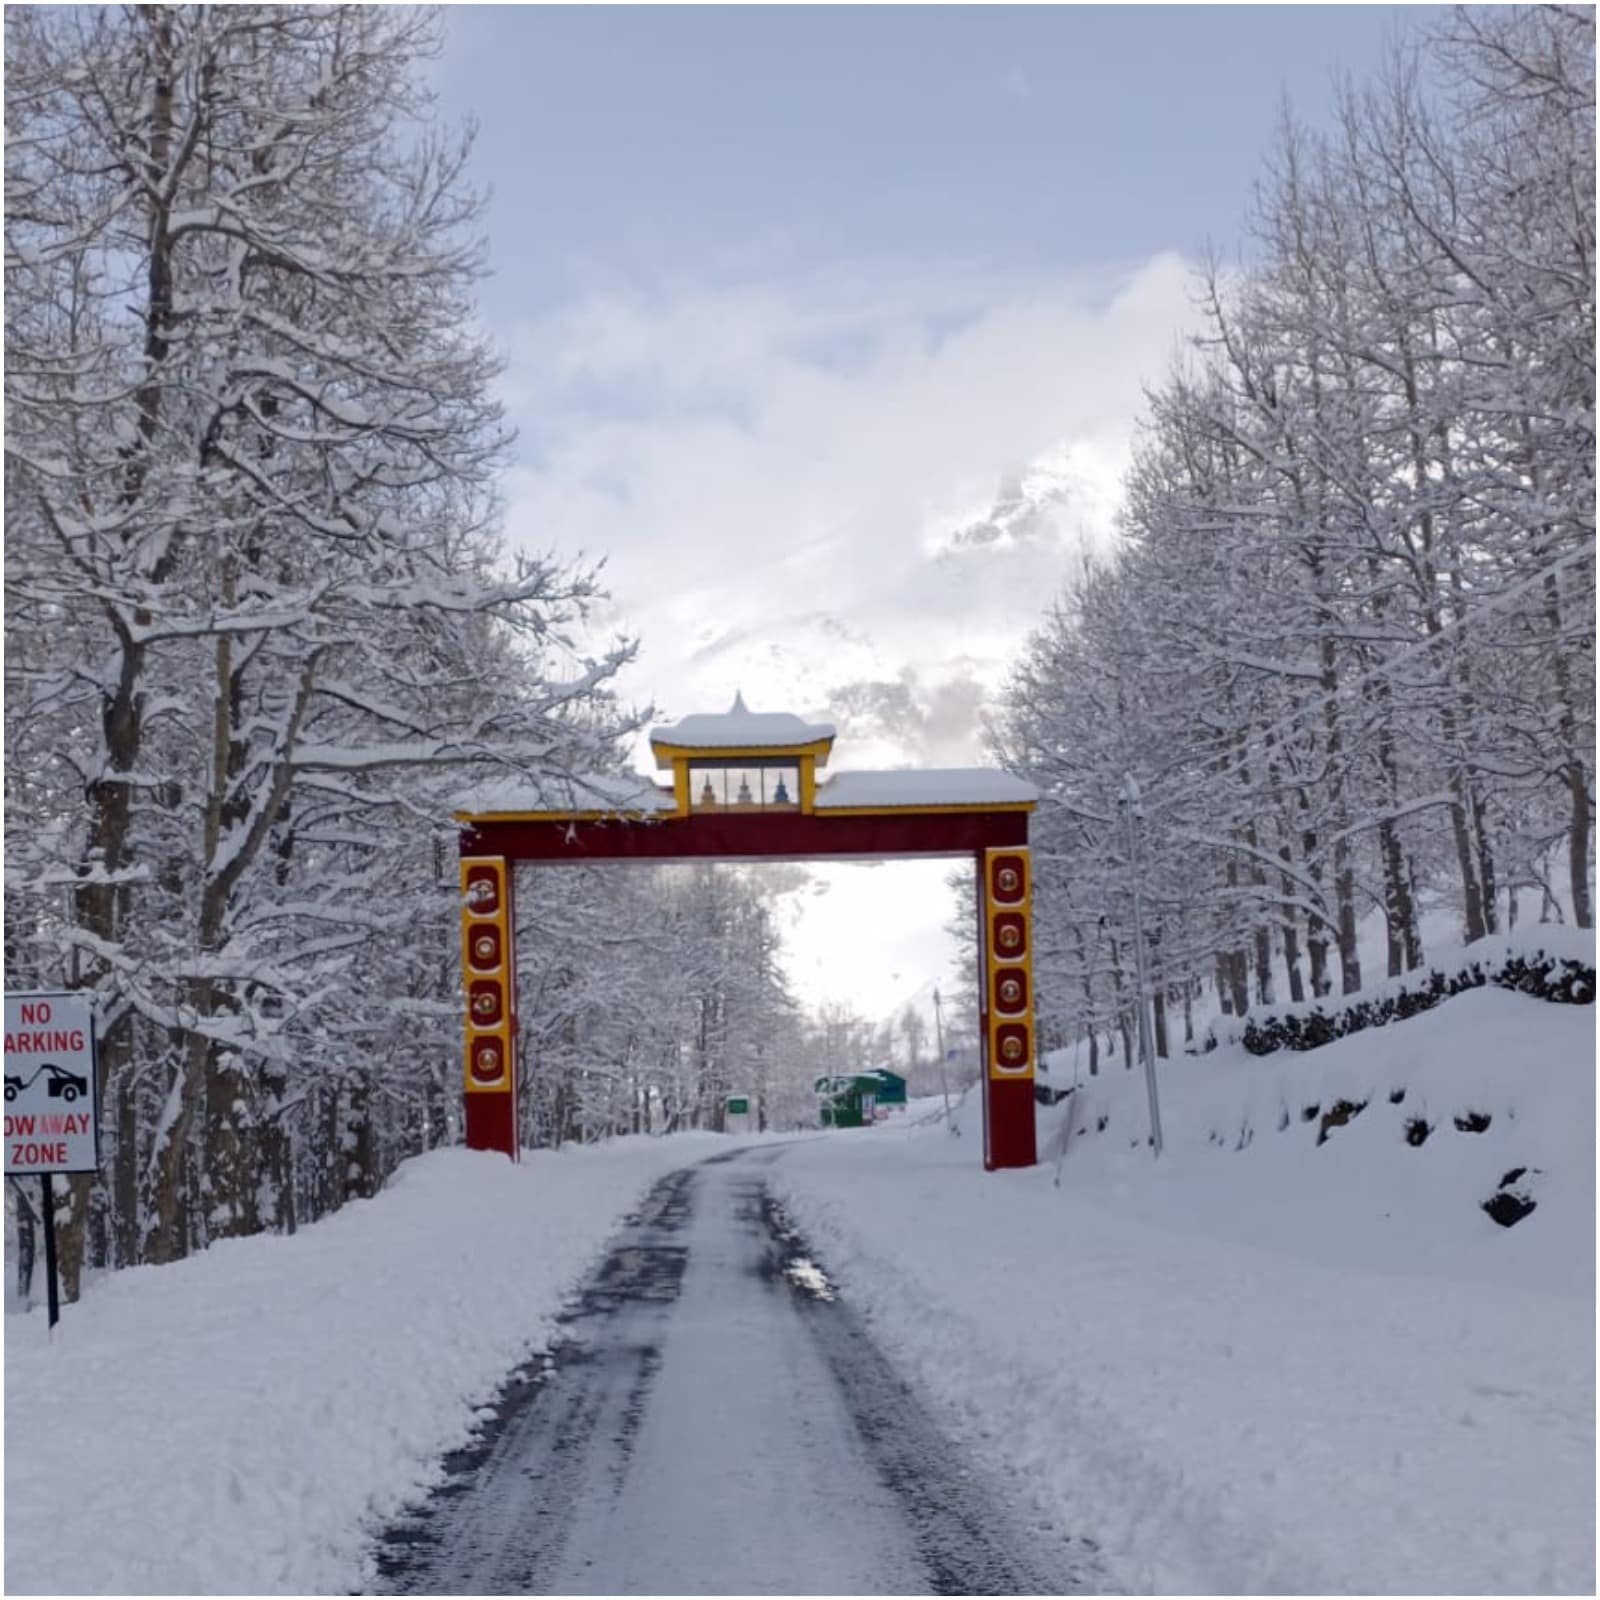  कुल्लू जिले के कई इलाकों में हुई ताजा बर्फबारी से जनजीवन अस्तव्यस्त हो गया है, तो जनजातीय जिले लाहौल-स्पीति में बर्फबारी से सड़क मार्ग बंद हो गए हैं.